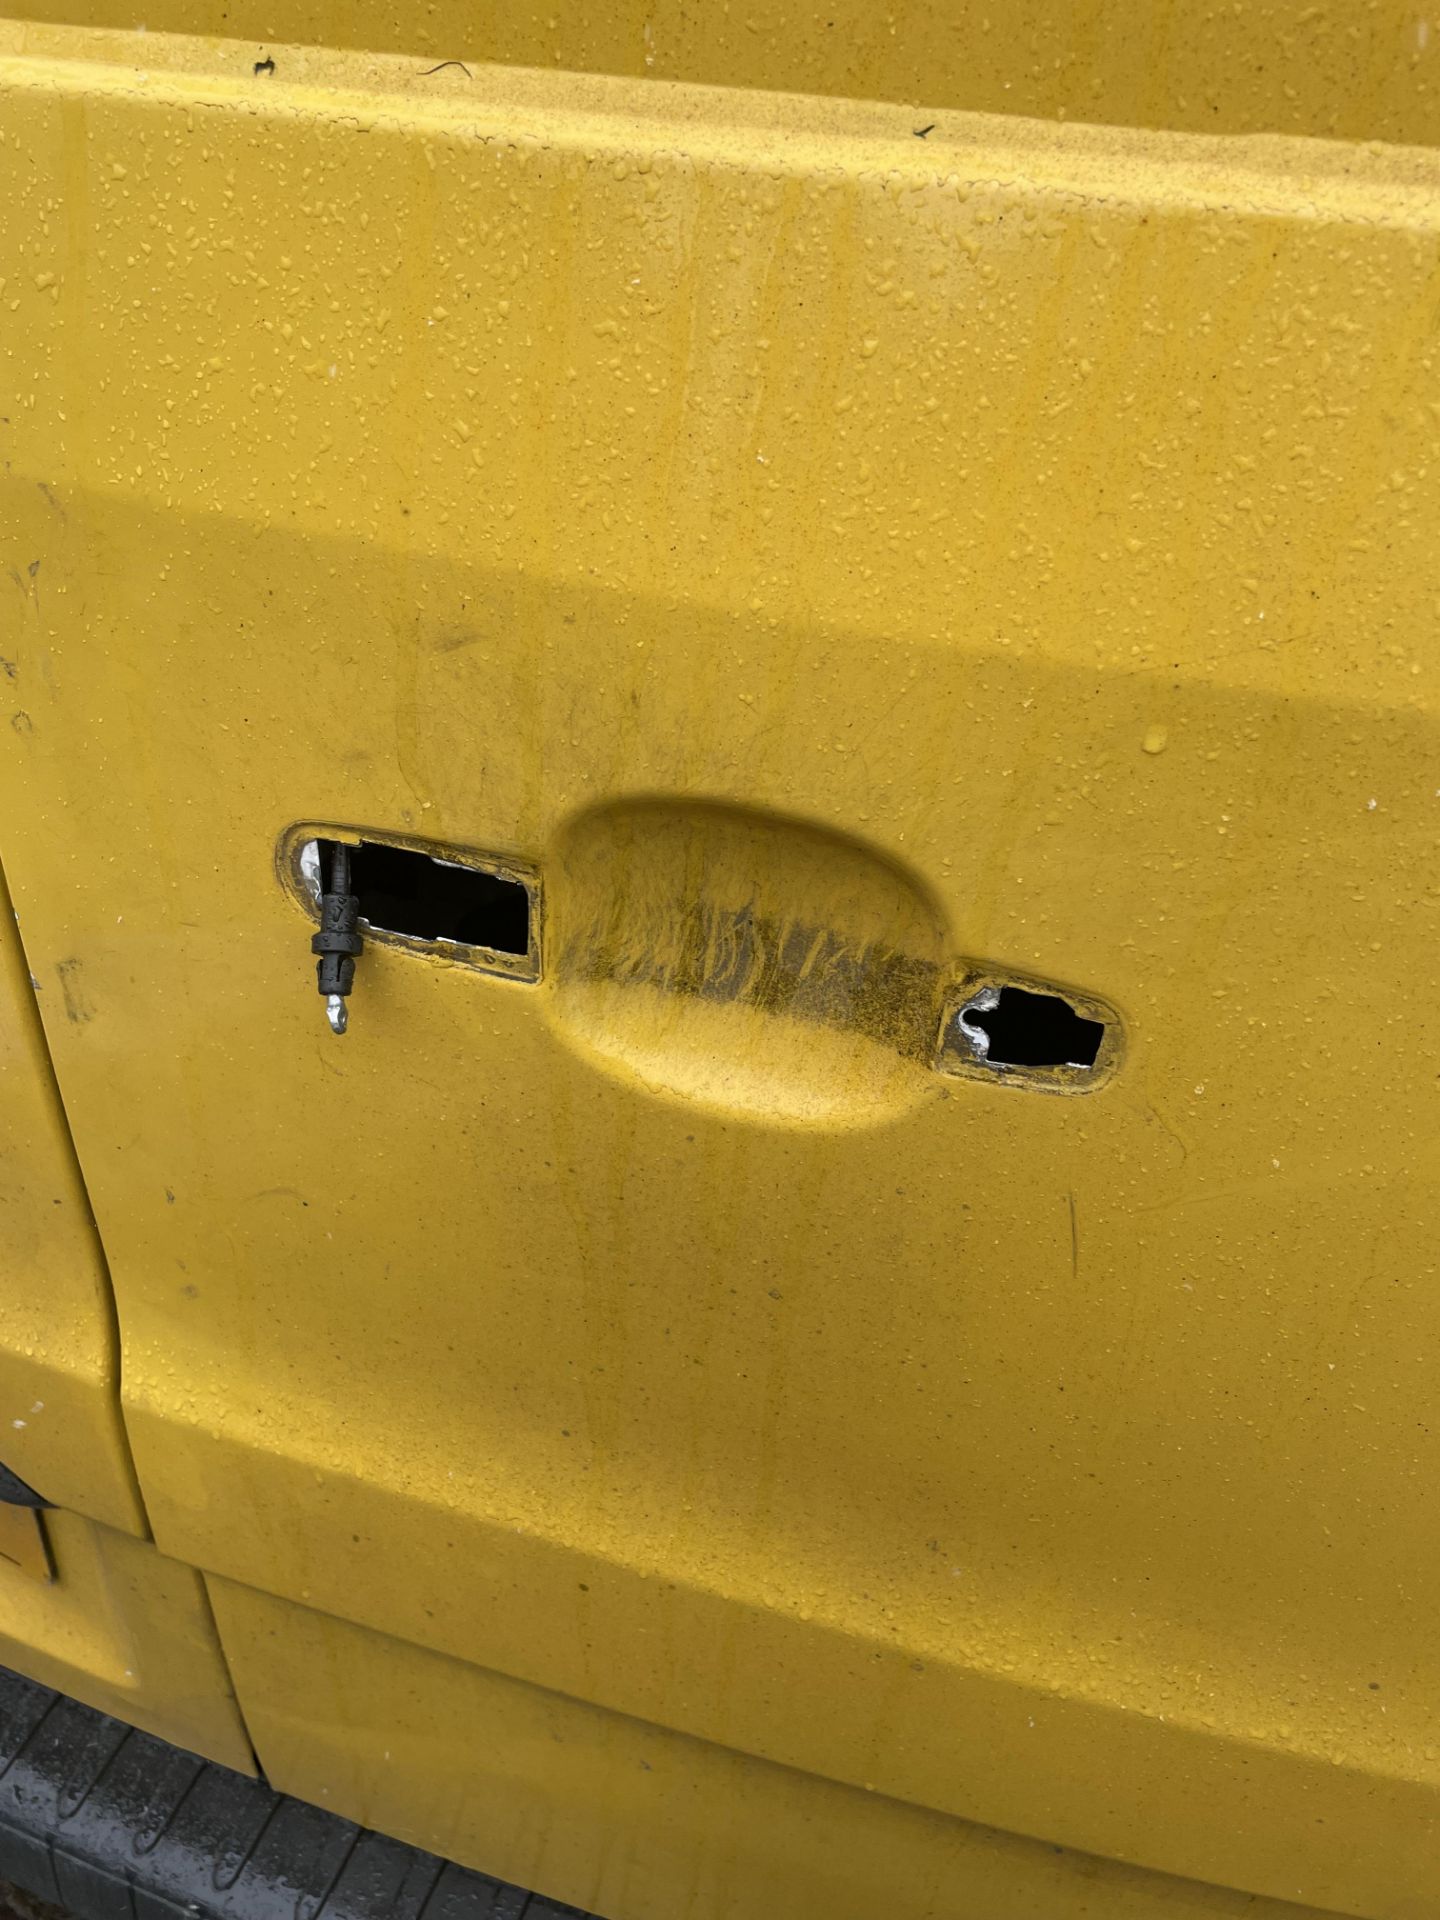 2017 Ford Transit panel van - Image 8 of 9